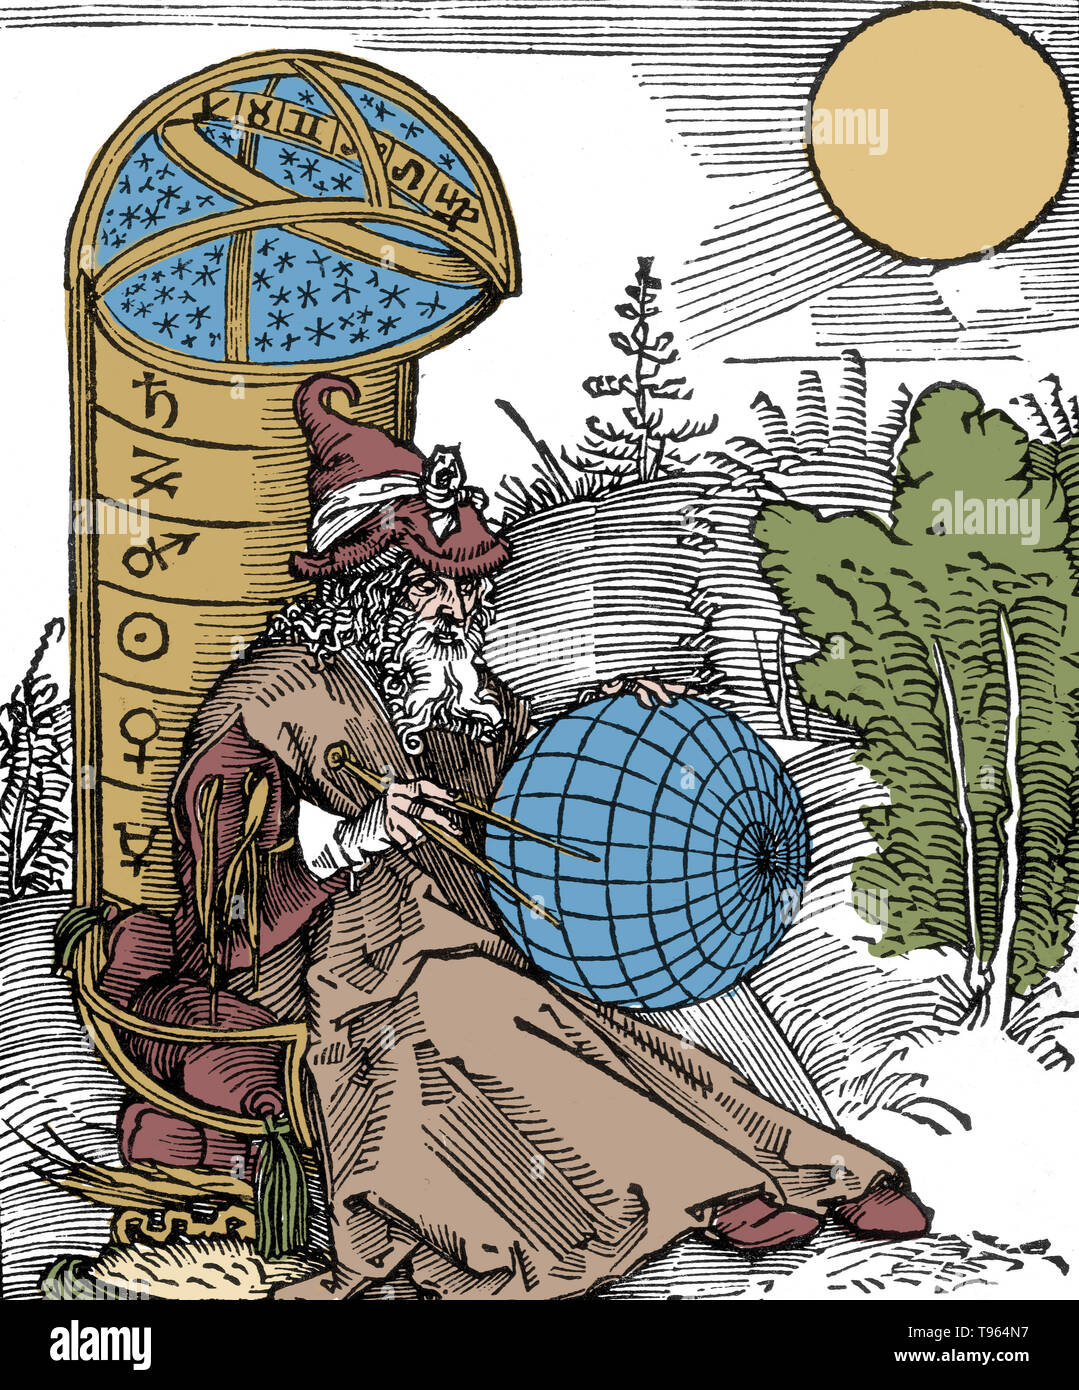 Une gravure d'un astronome par Albrecht Dürer, à partir de la page de titre, Messahalah De scientia motus orbis (1504). Comme dans de nombreuses illustrations médiévales, la rédaction d'ici la boussole est une icône de la religion et de la science, en référence à Dieu comme l'architecte de la création. Mashallah ibn Athari (740-815 AD) était un 8e siècle juif perse astrologue et astronome de la ville de Bassorah. Banque D'Images